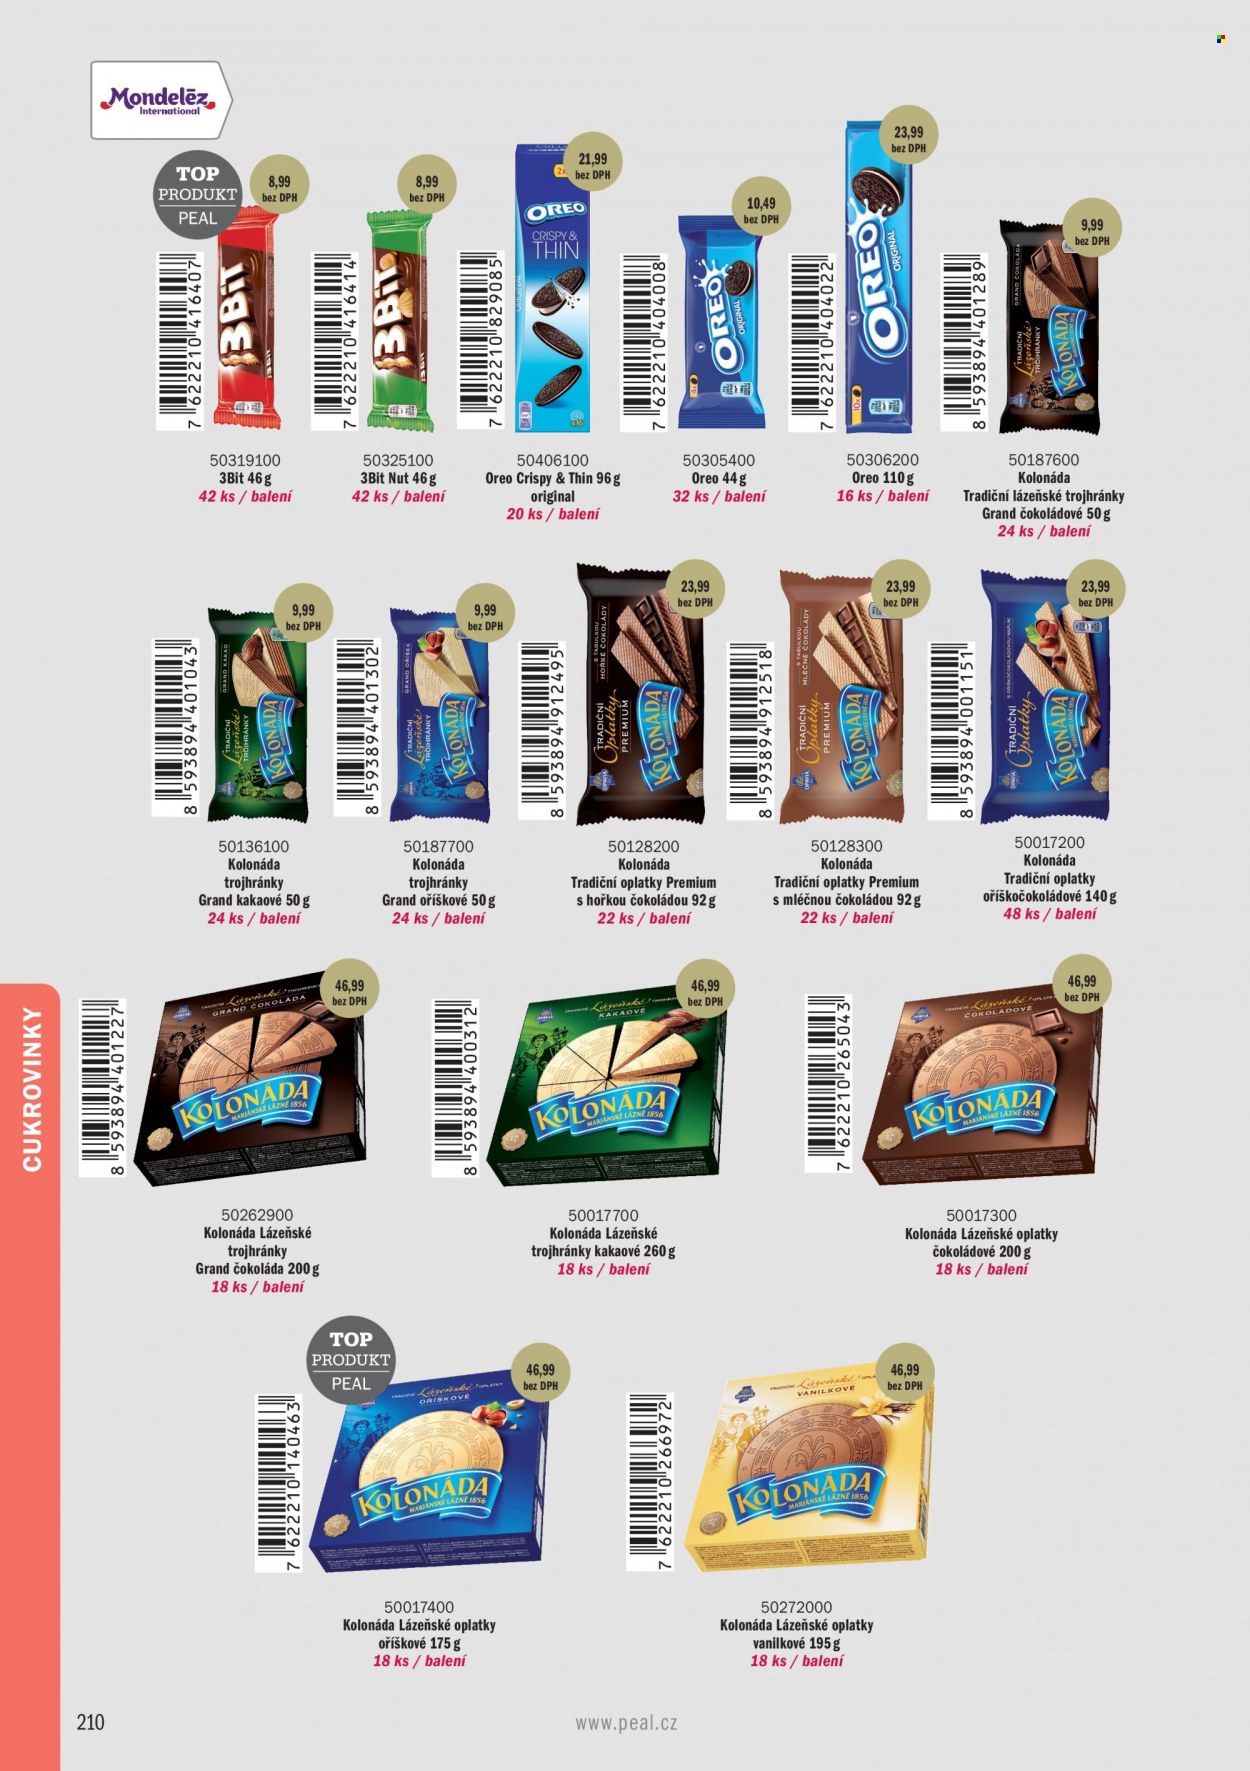 thumbnail - Leták PEAL - Produkty v akci - oplatky, Oreo, sušenky, Kolonáda, Opavia, 3BiT, Lázeňské oplatky, trojhránky, čokoládová tyčinka. Strana 12.